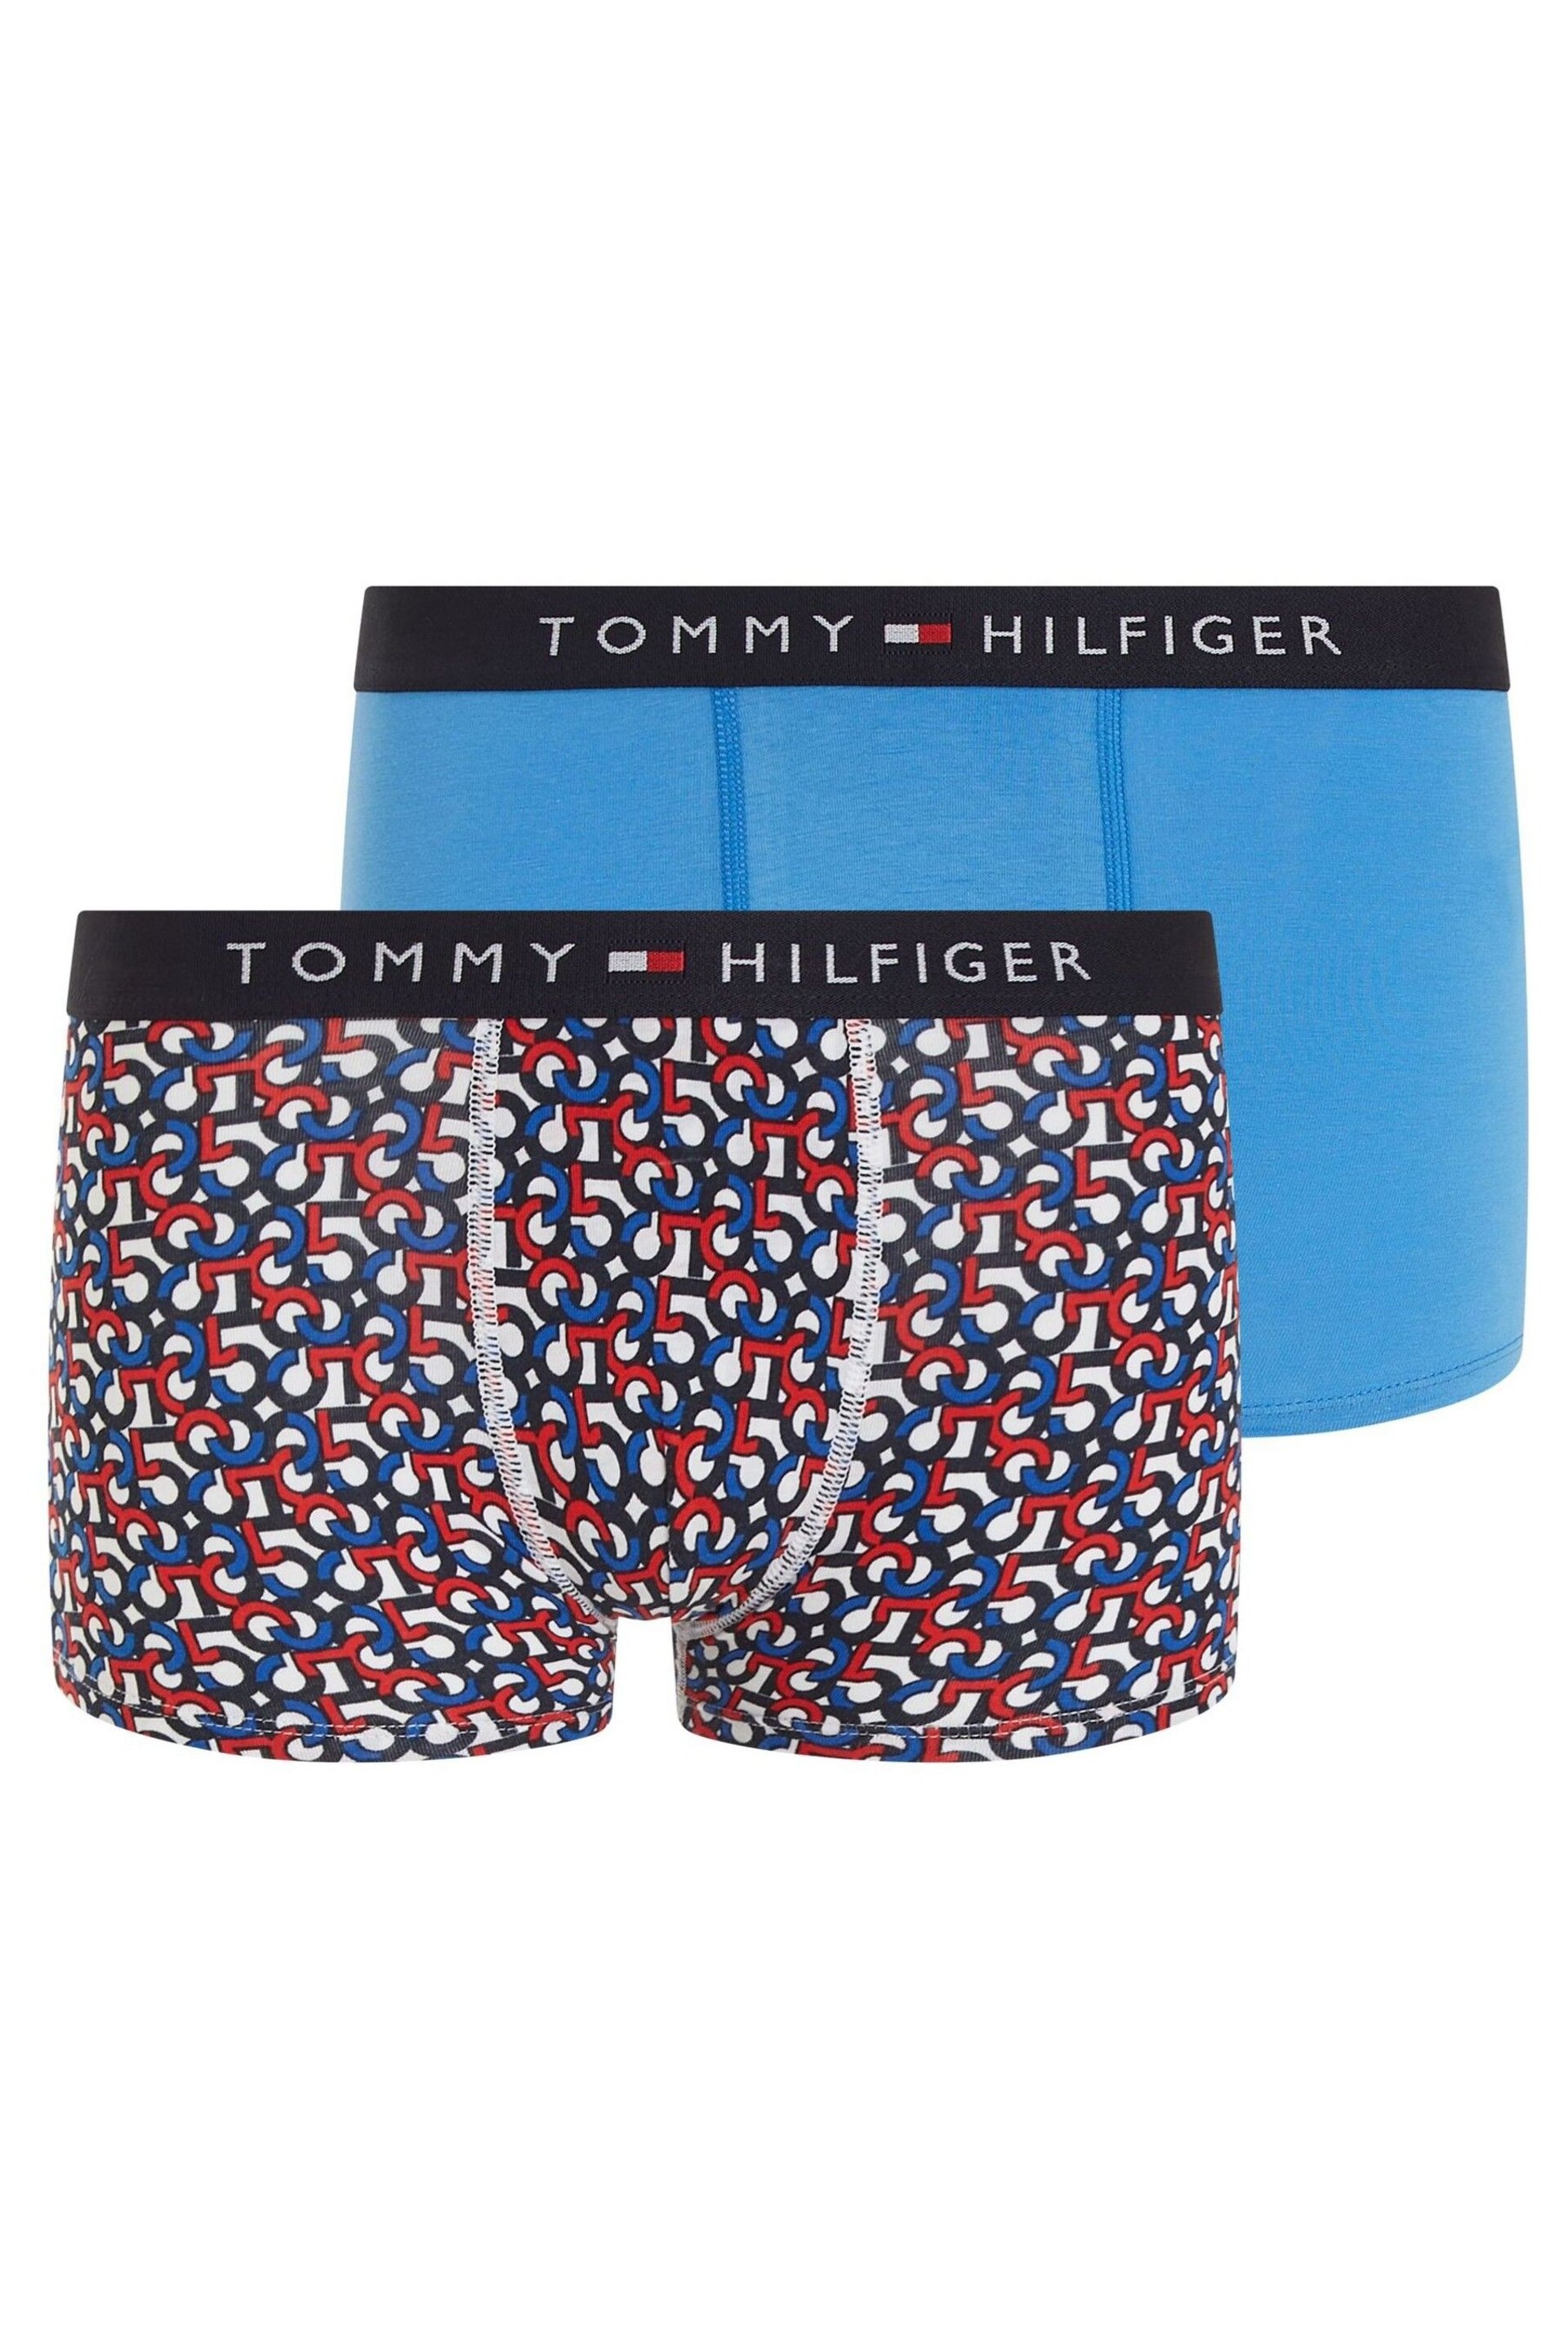 Tommy Hilfiger Trunks 2 Pack - Image 1 of 3